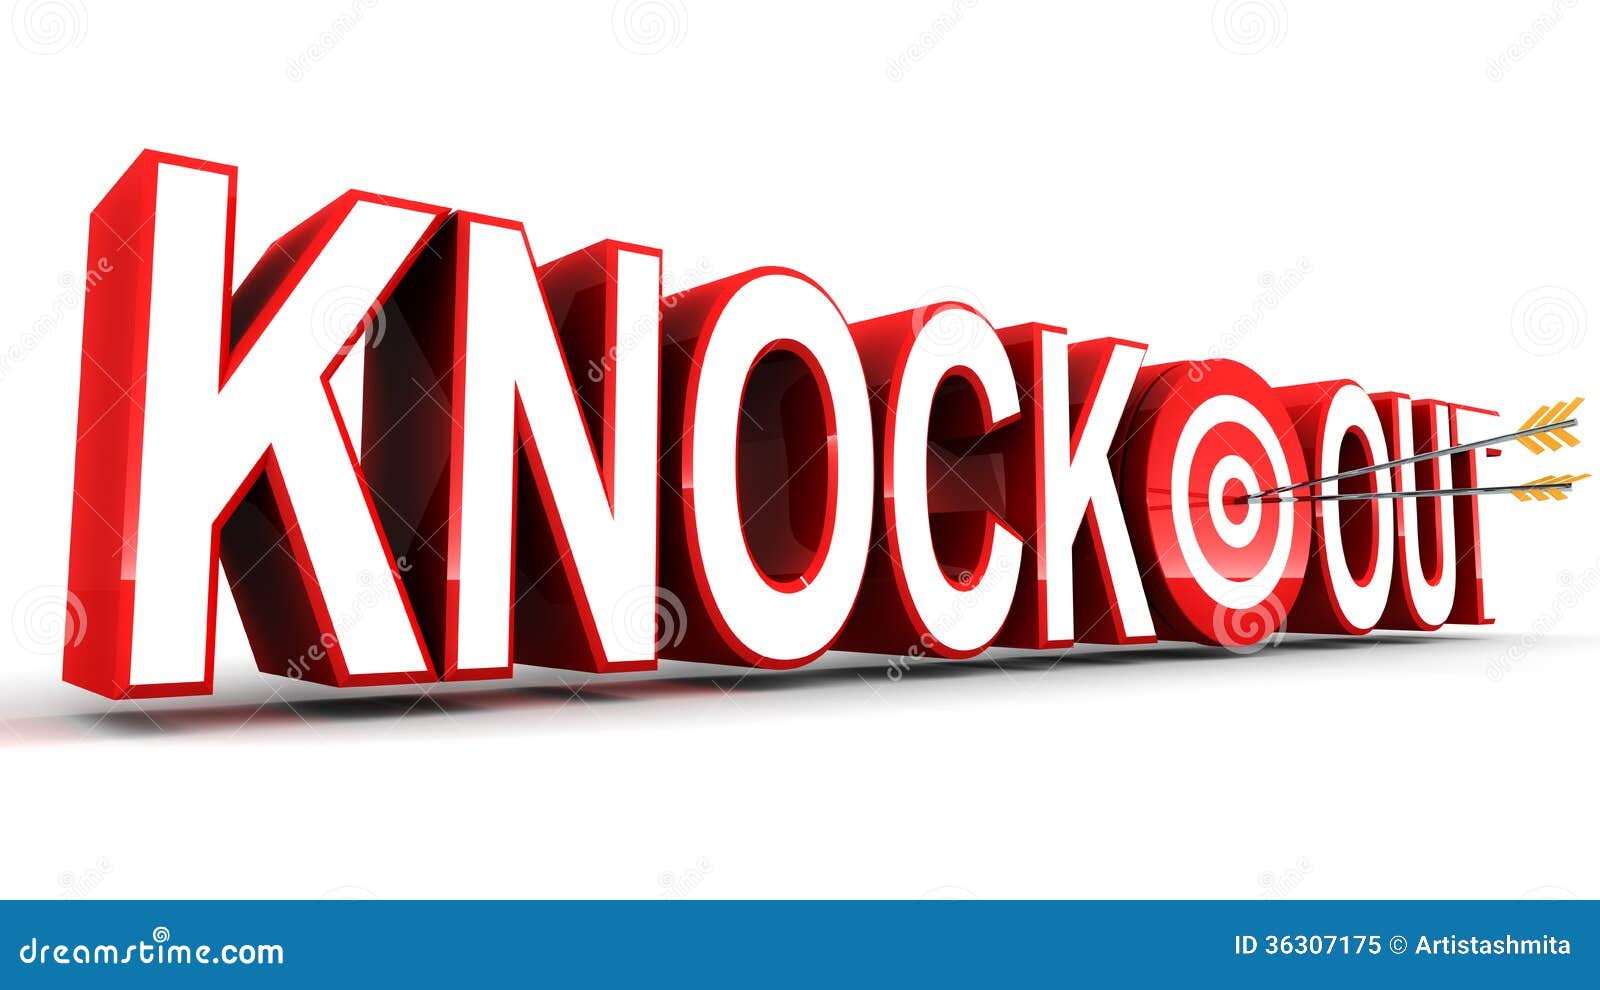 KNOCKOUT - Definição e sinônimos de knockout no dicionário inglês